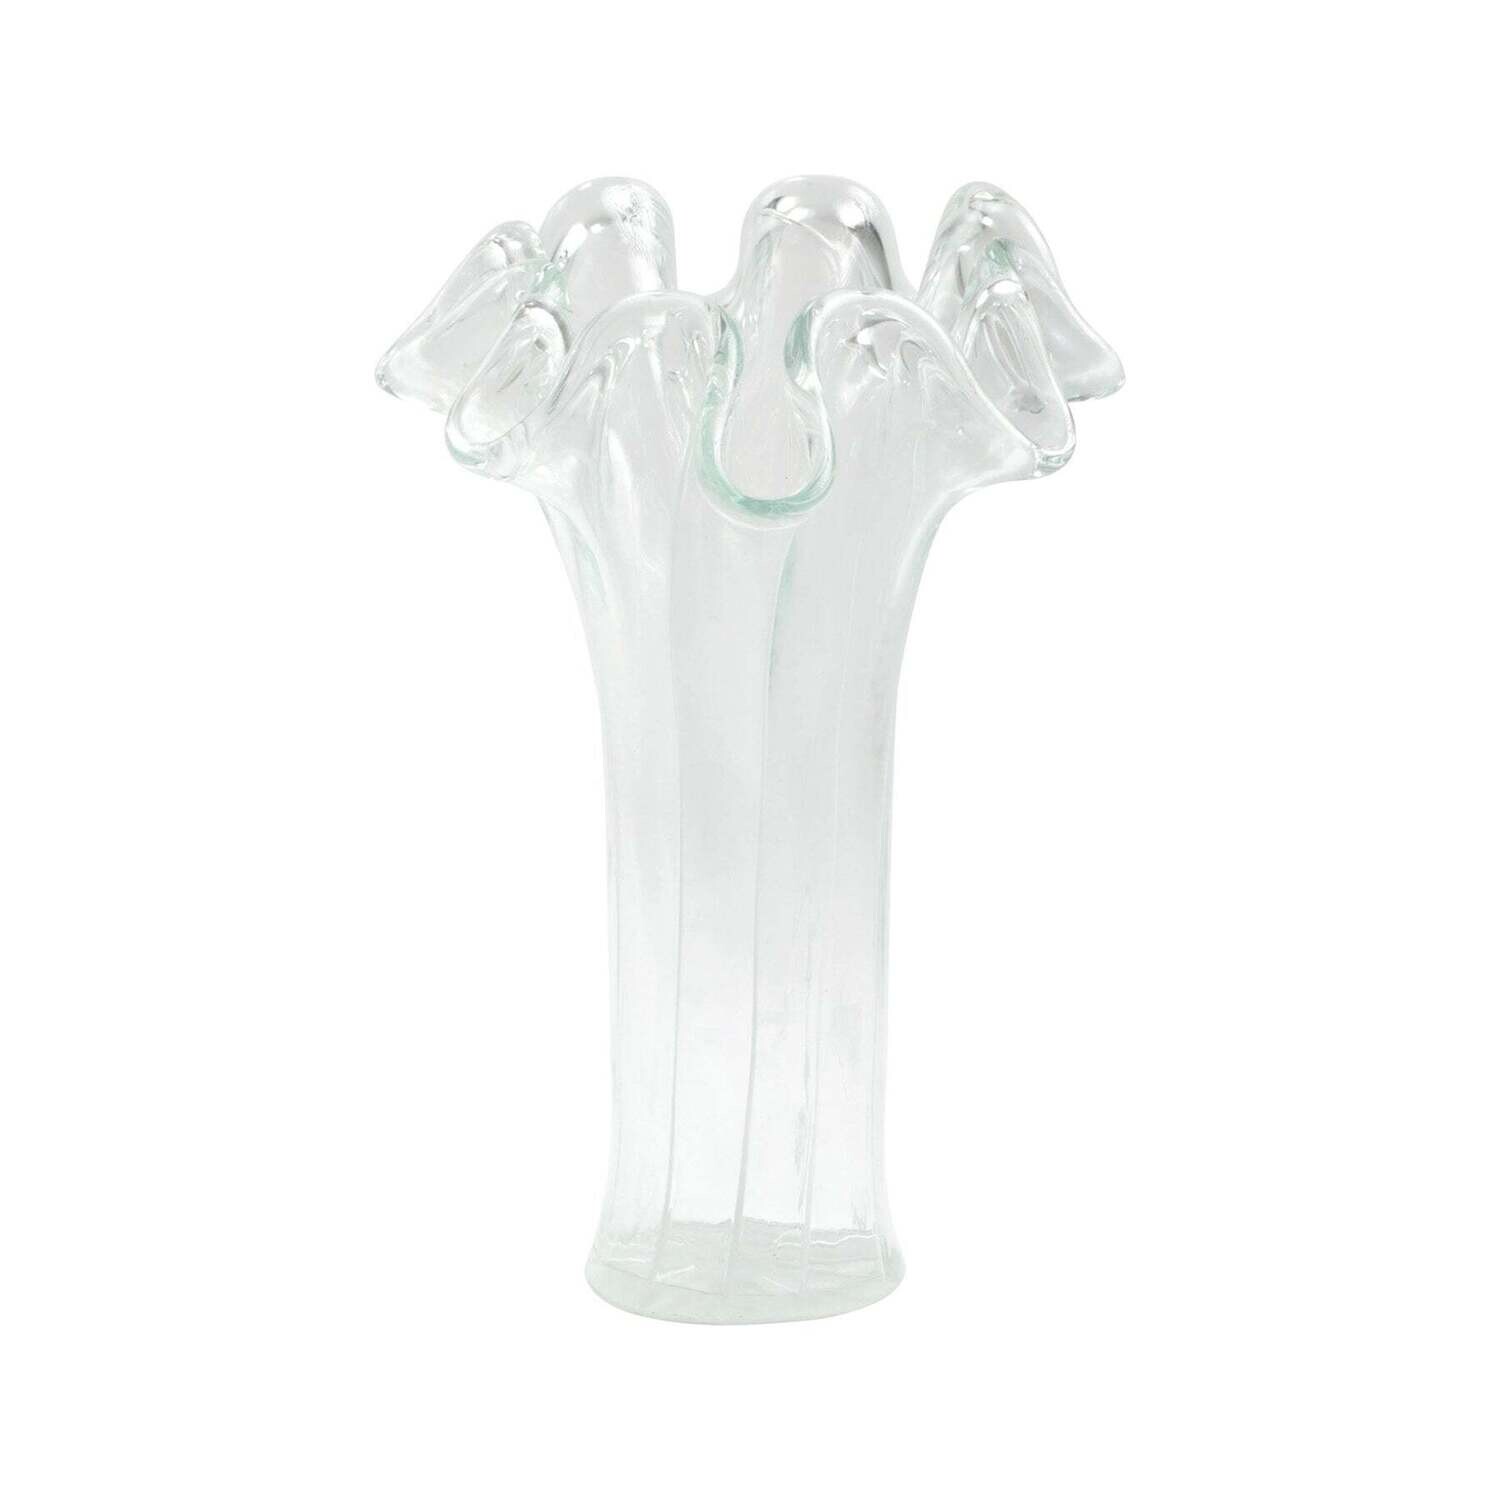 VIETRI Onda Glass clear w/ white lines short vase